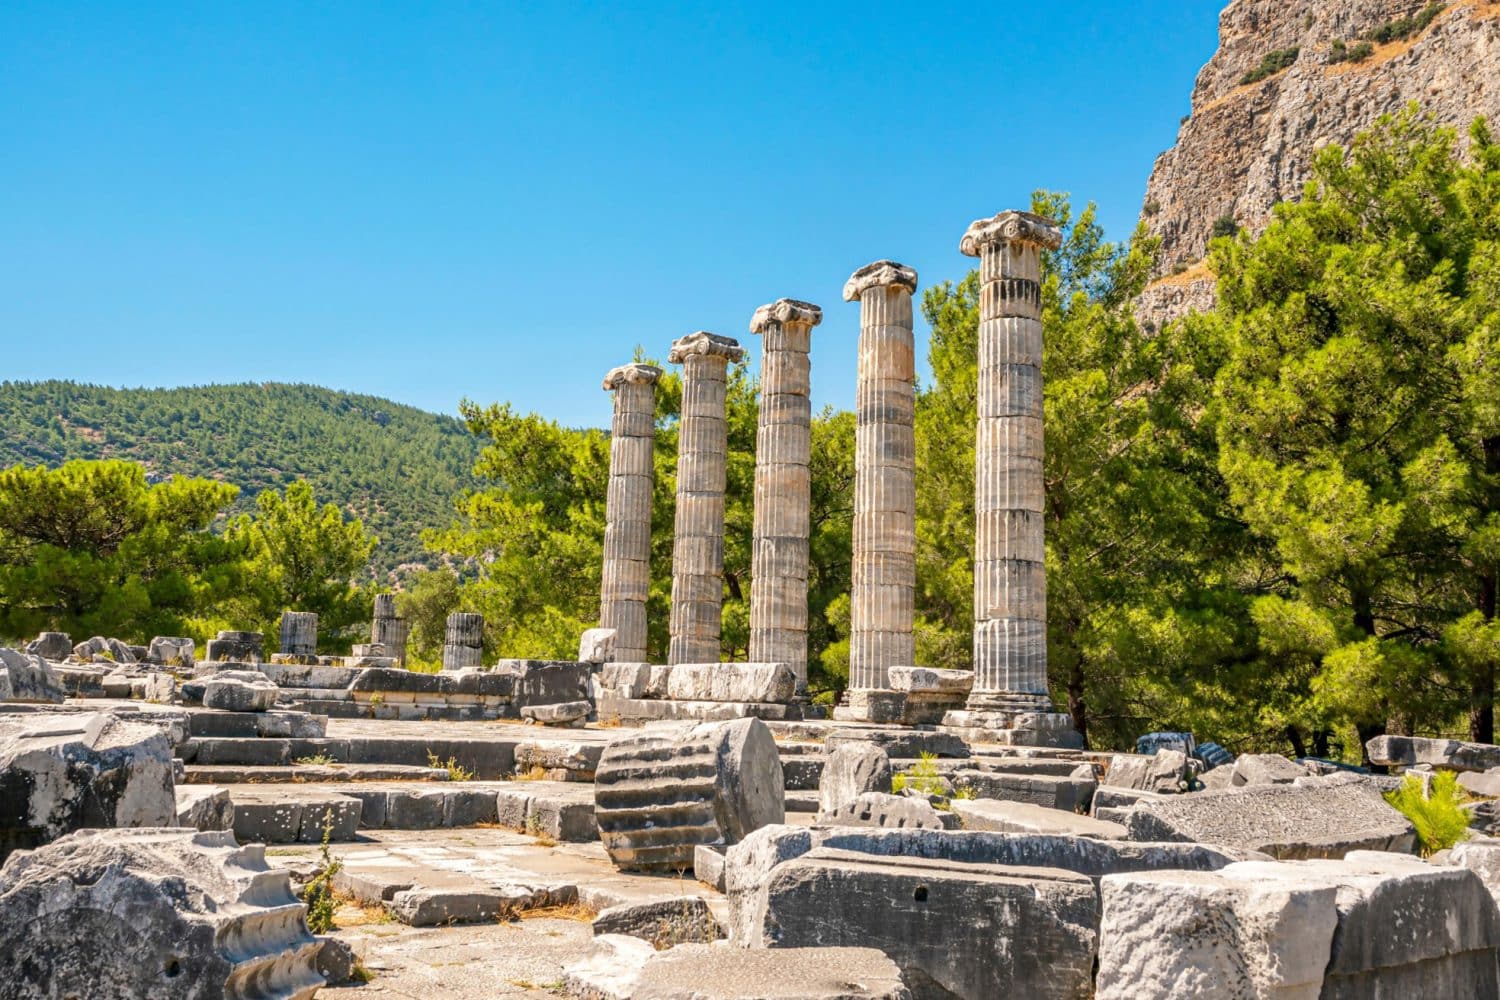 Tour Photos: Ionic columns of Temple of Athena Polias of Priene